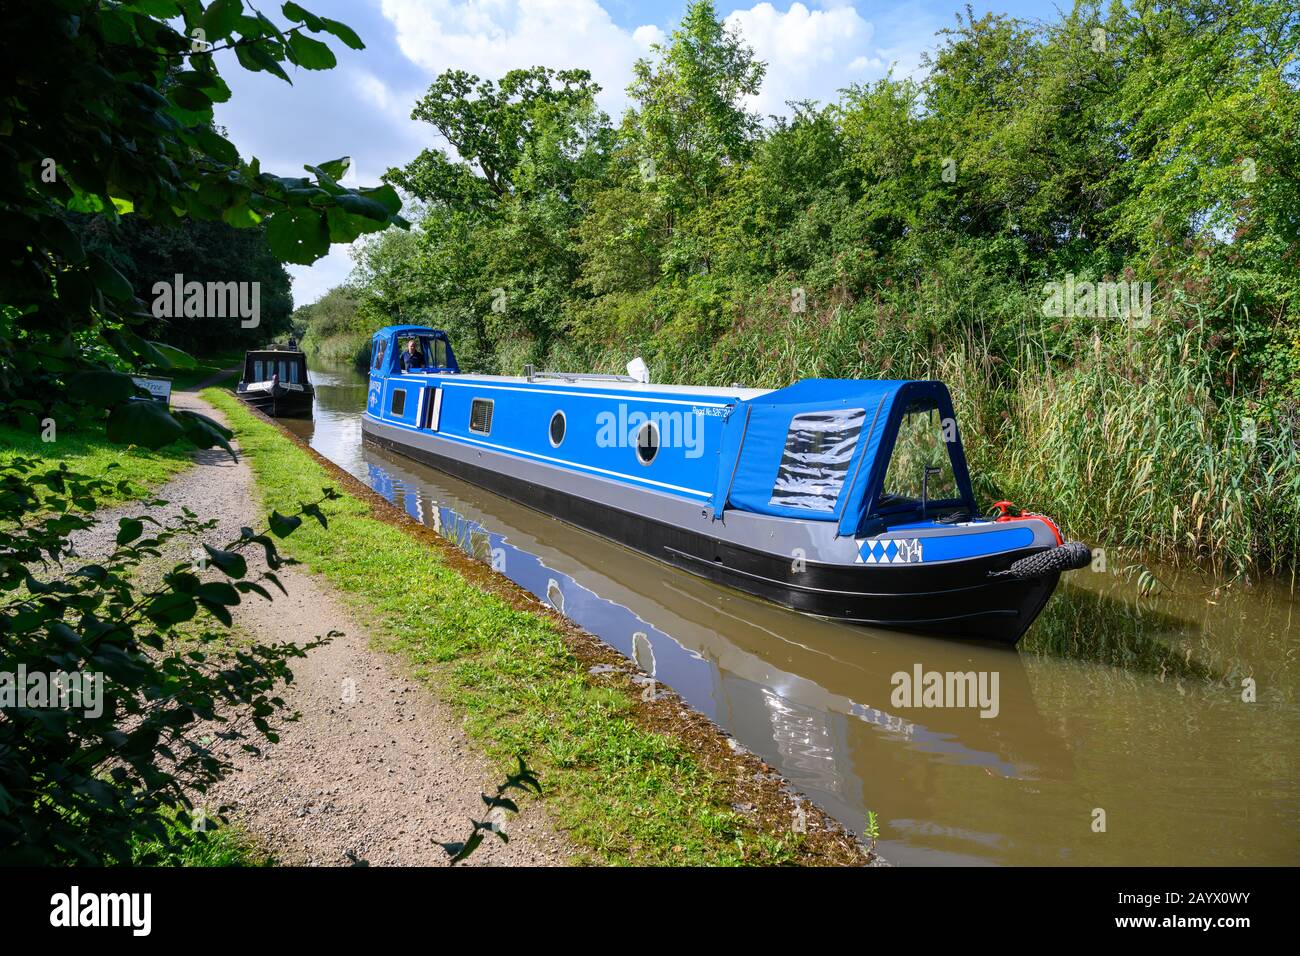 Un nouveau bateau à narrowboat est sorti pour sa première excursion le long du canal de Worcester et de Birmingham en été ensoleillé. Banque D'Images